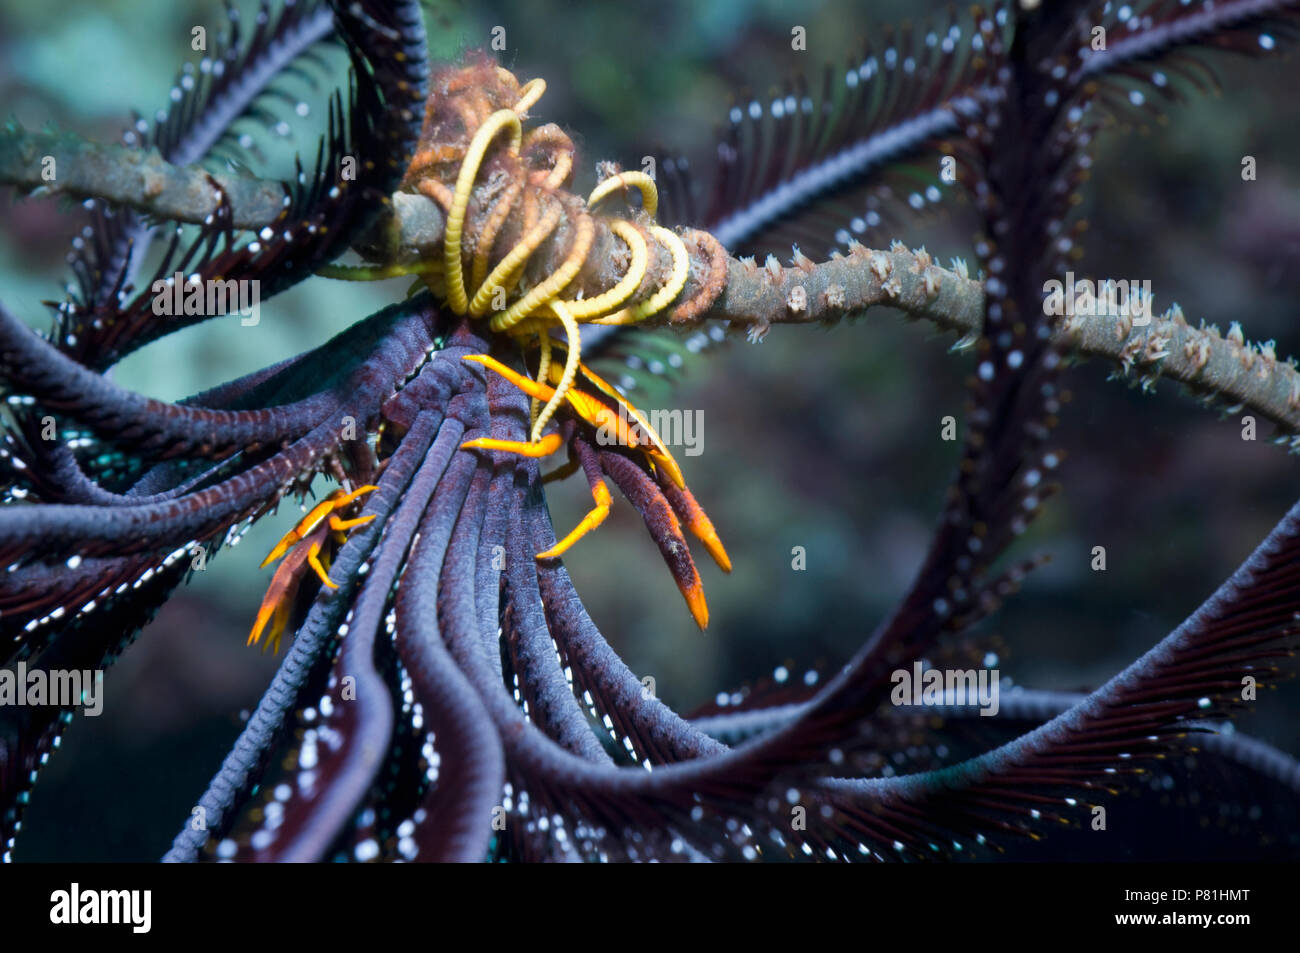 Coppia di aragosta squat (Allogalathea elegans) su featherstar. La femmina della specie è più grande. Isole Salomone. Foto Stock